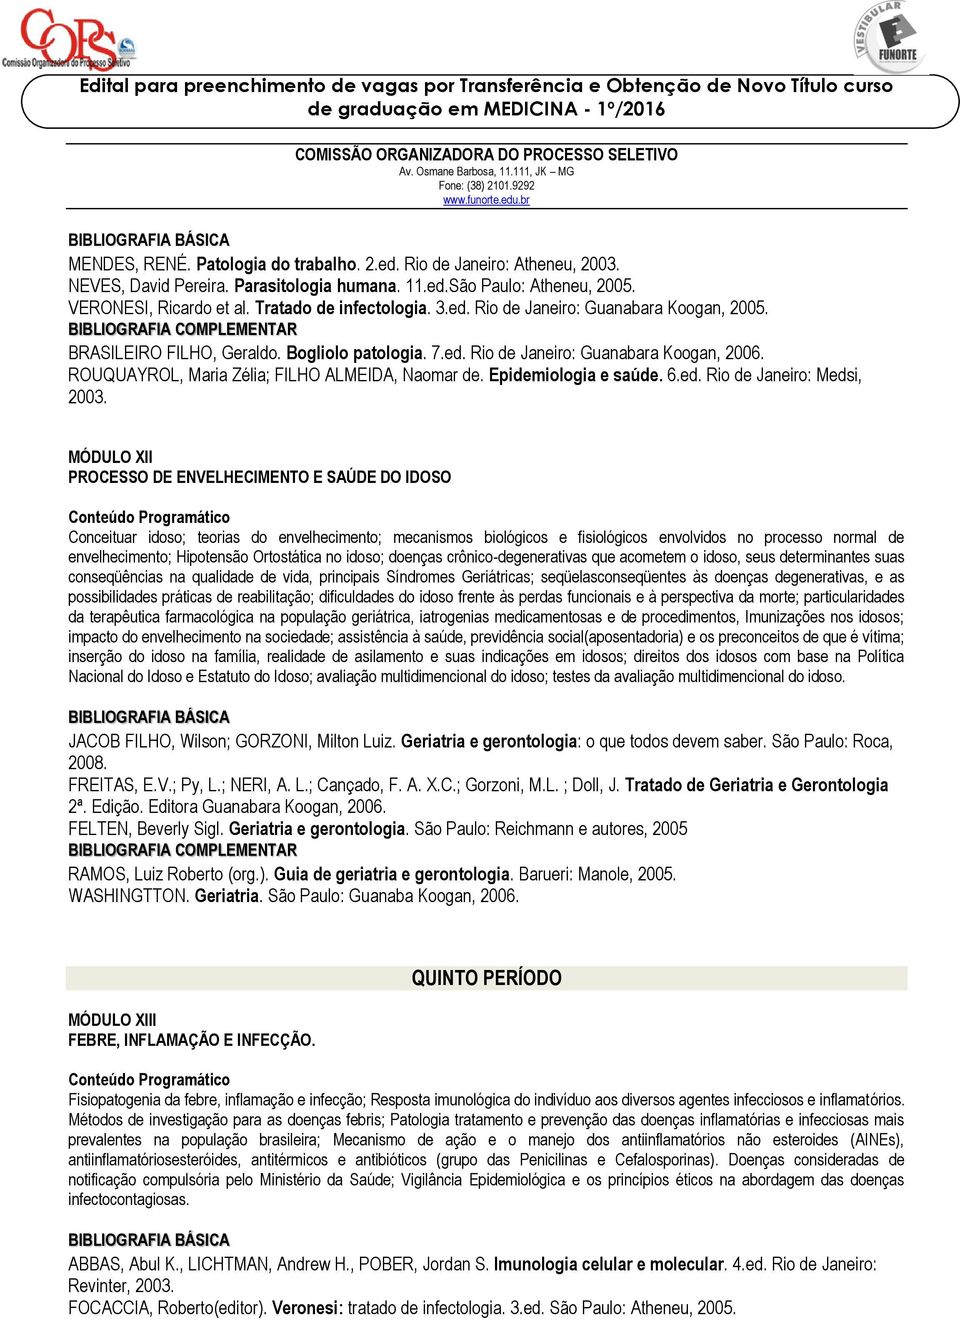 Epidemiologia e saúde. 6.ed. Rio de Janeiro: Medsi, 2003.